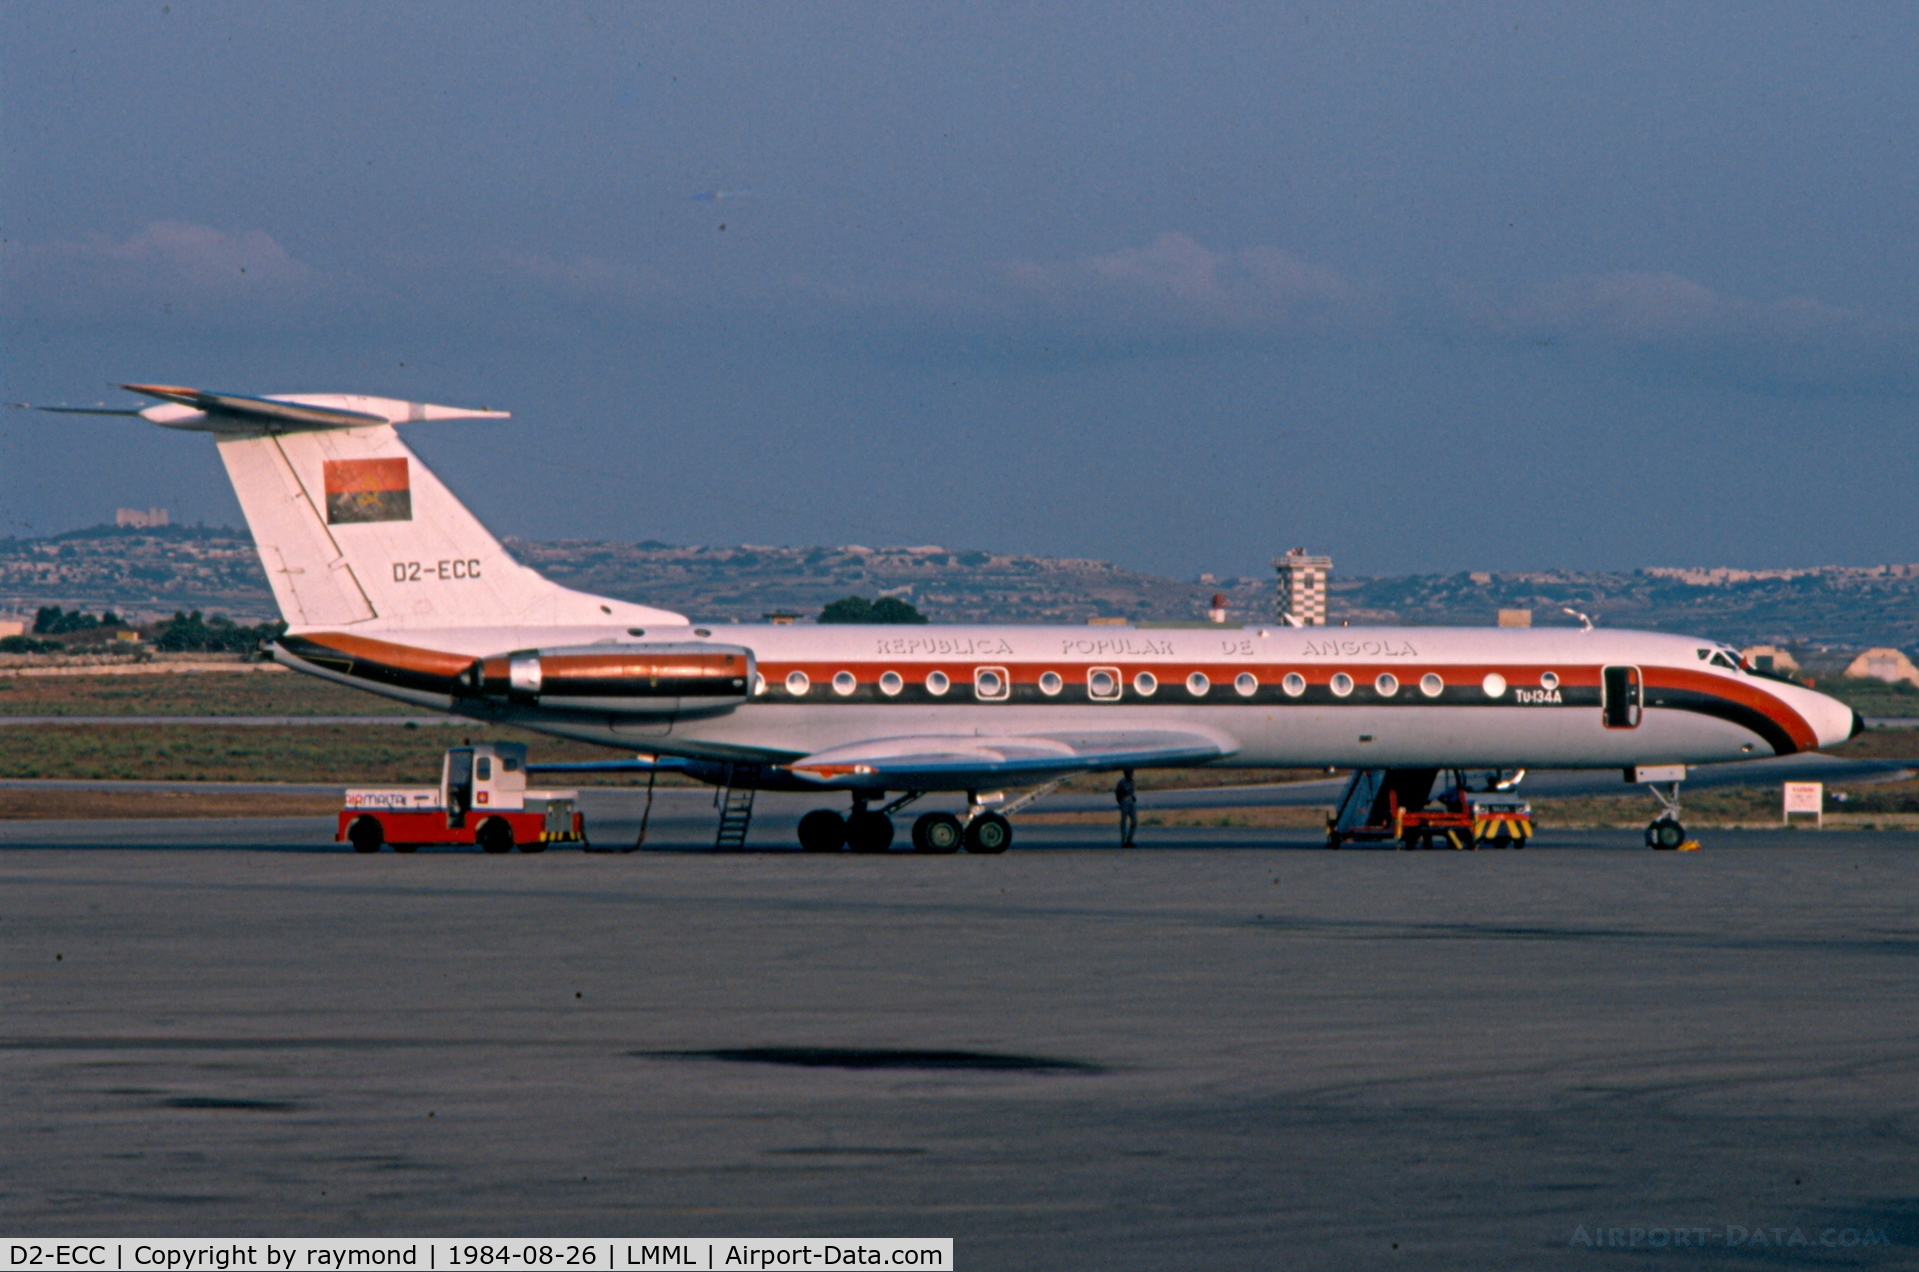 D2-ECC, 1976 Tupolev Tu-134A C/N 49830, Tu134 D2-ECC Govt of Angola